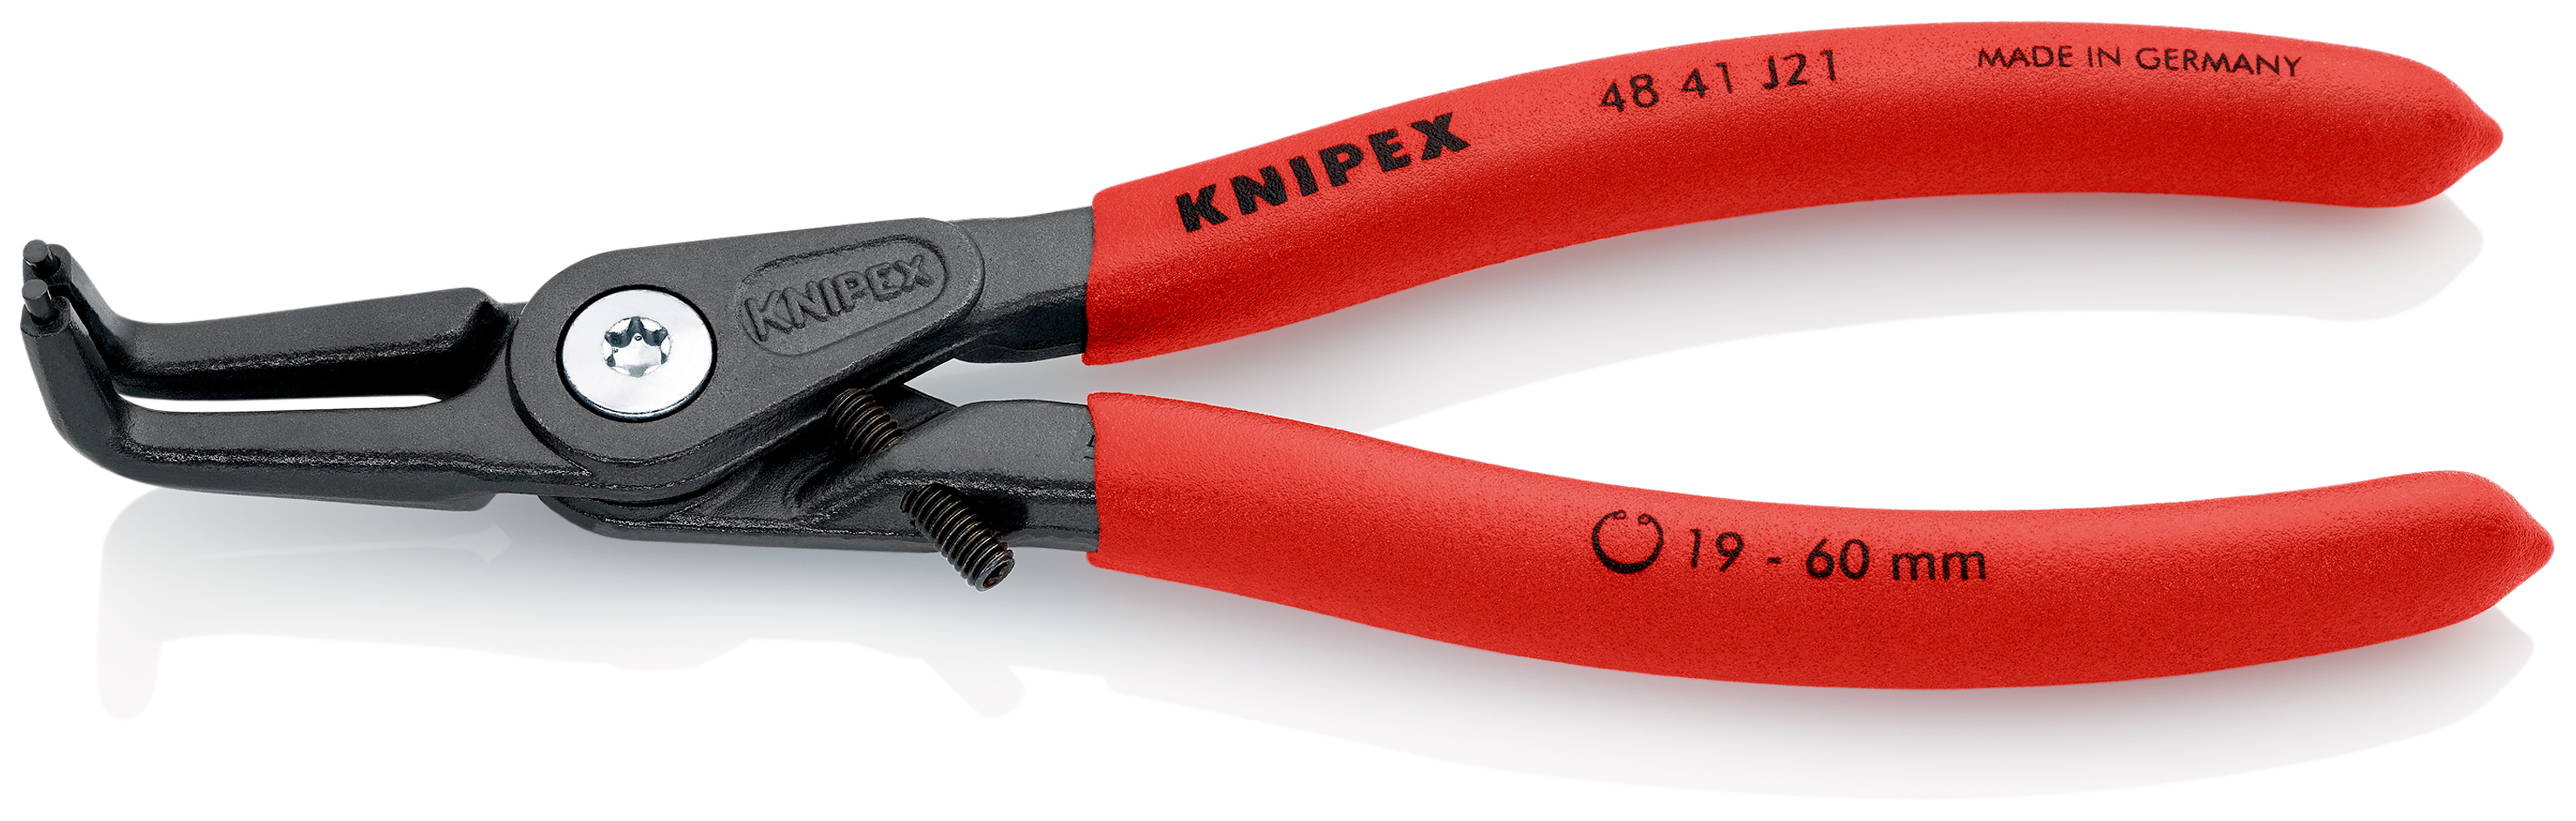 Knipex 4841J21 Cleste pentru inele de siguranta de interior, lungime 165 mm